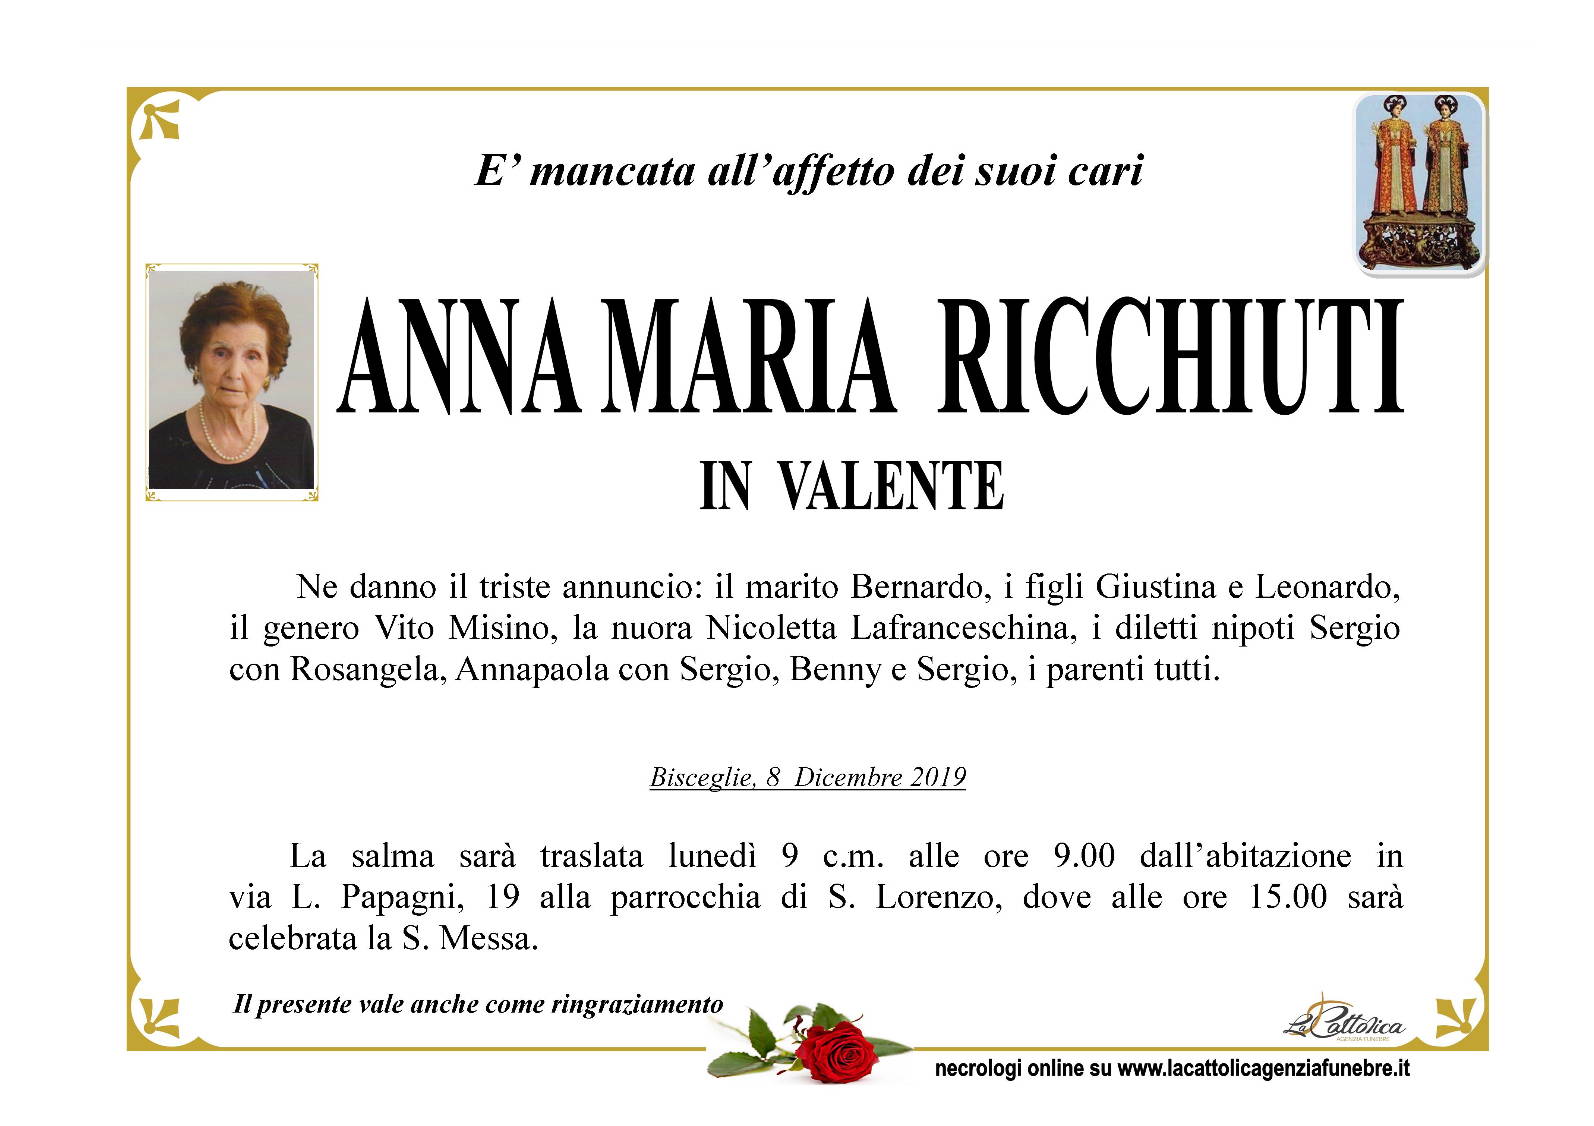 Anna Maria Ricchiuti